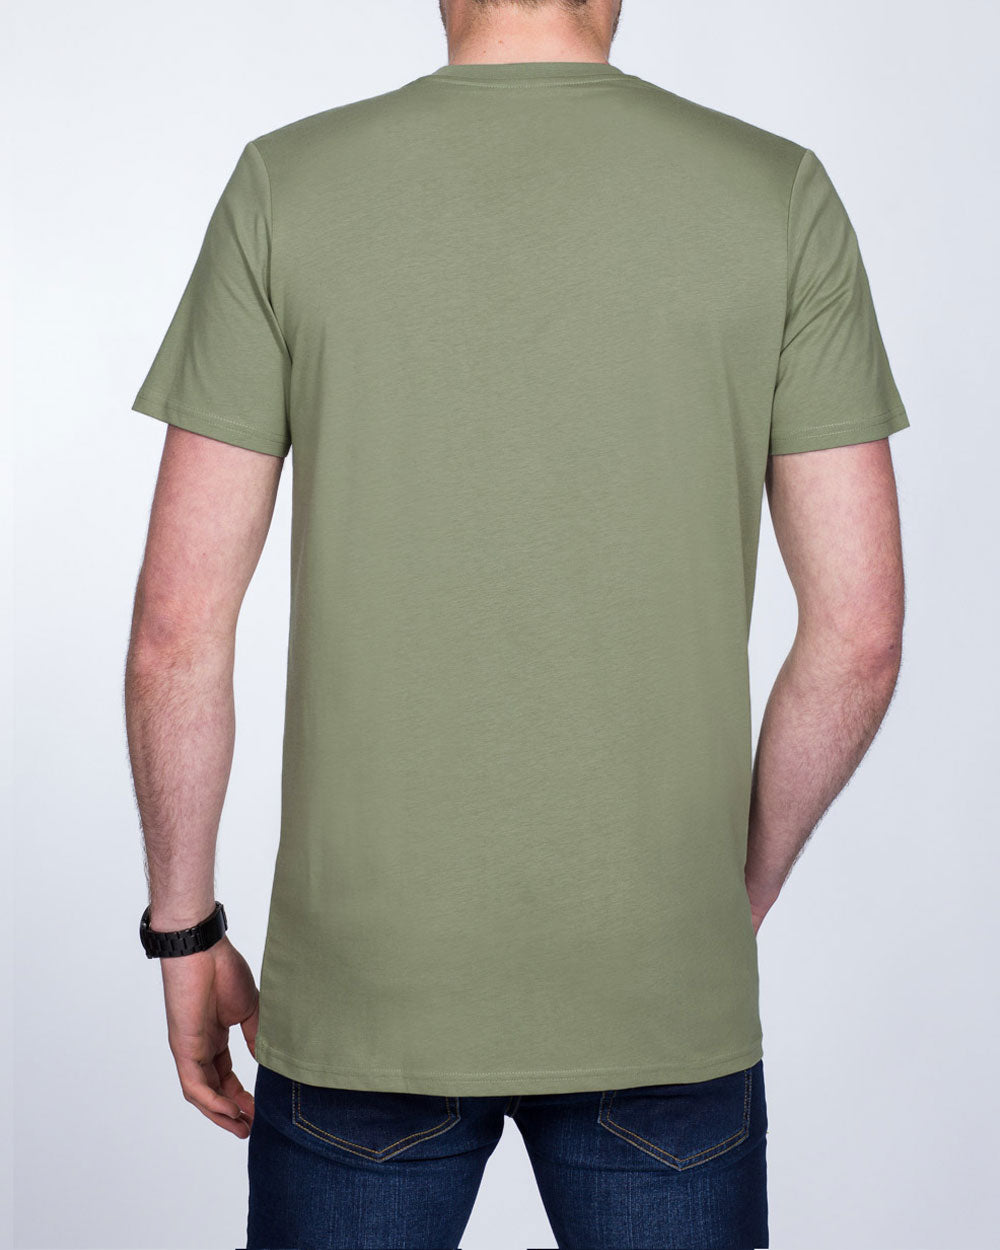 Girav Sydney Tall T-Shirt (olive)